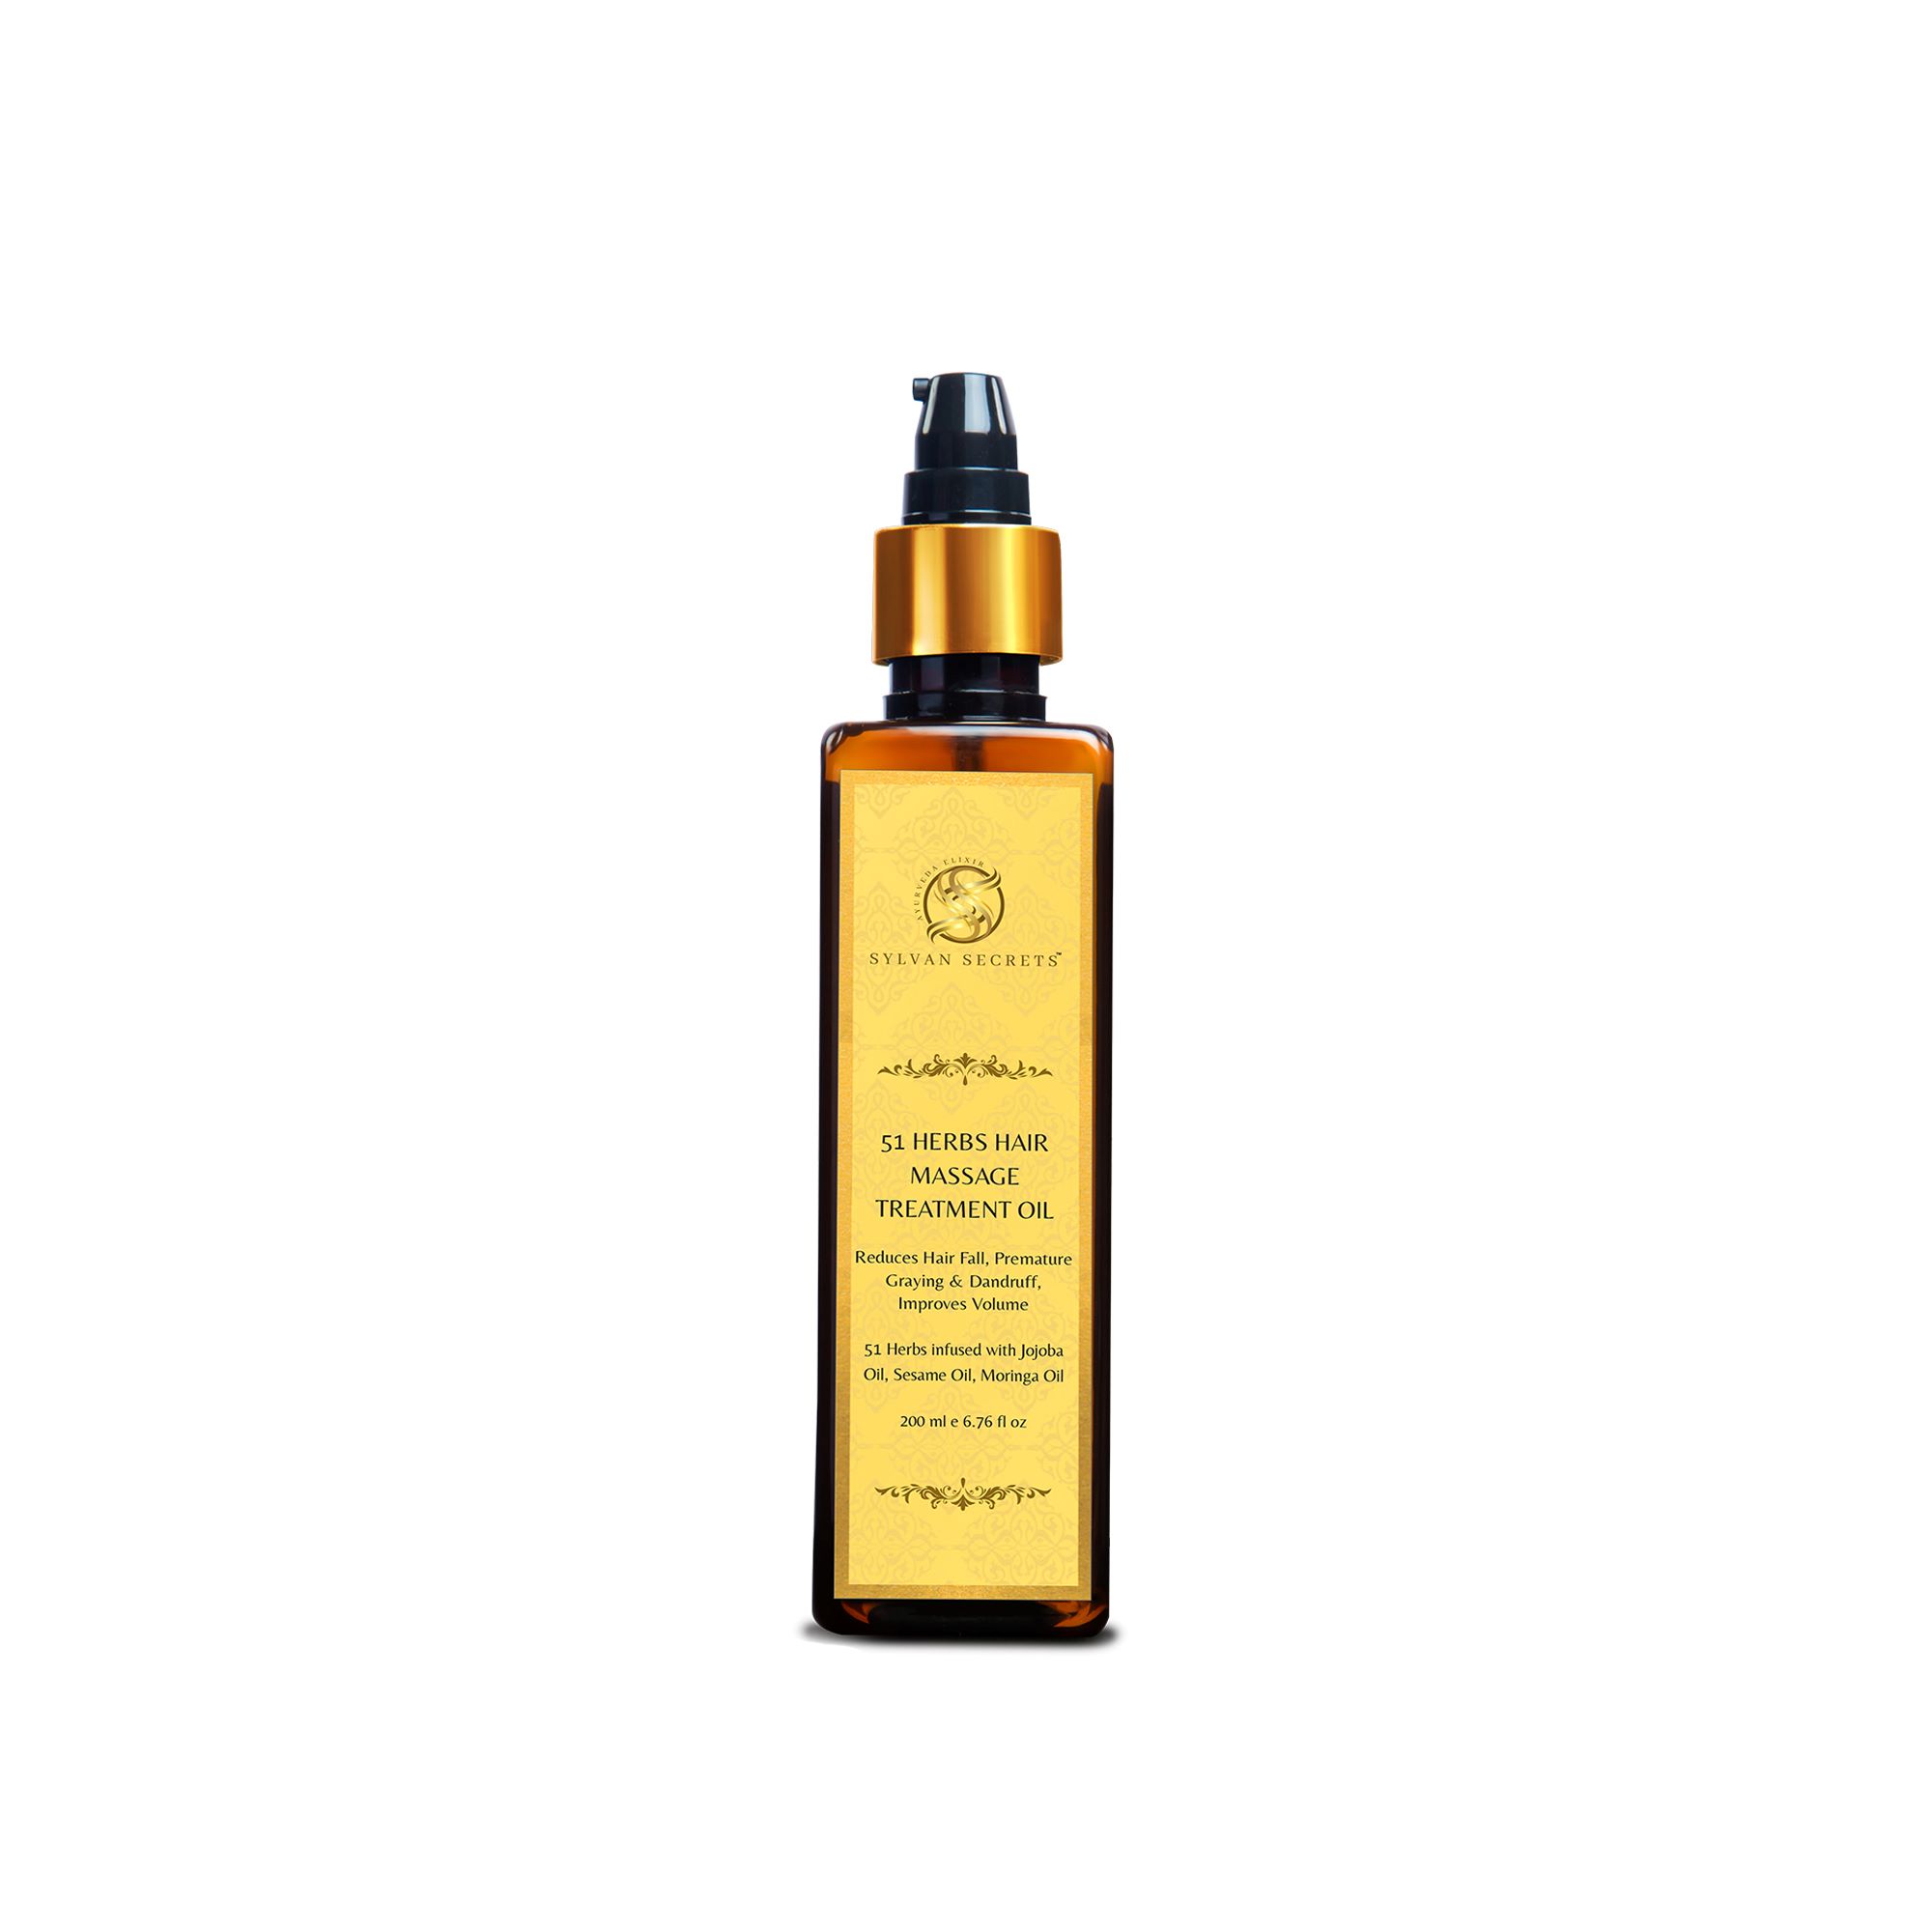 51 Herbs Hair Massage Treatment Oil